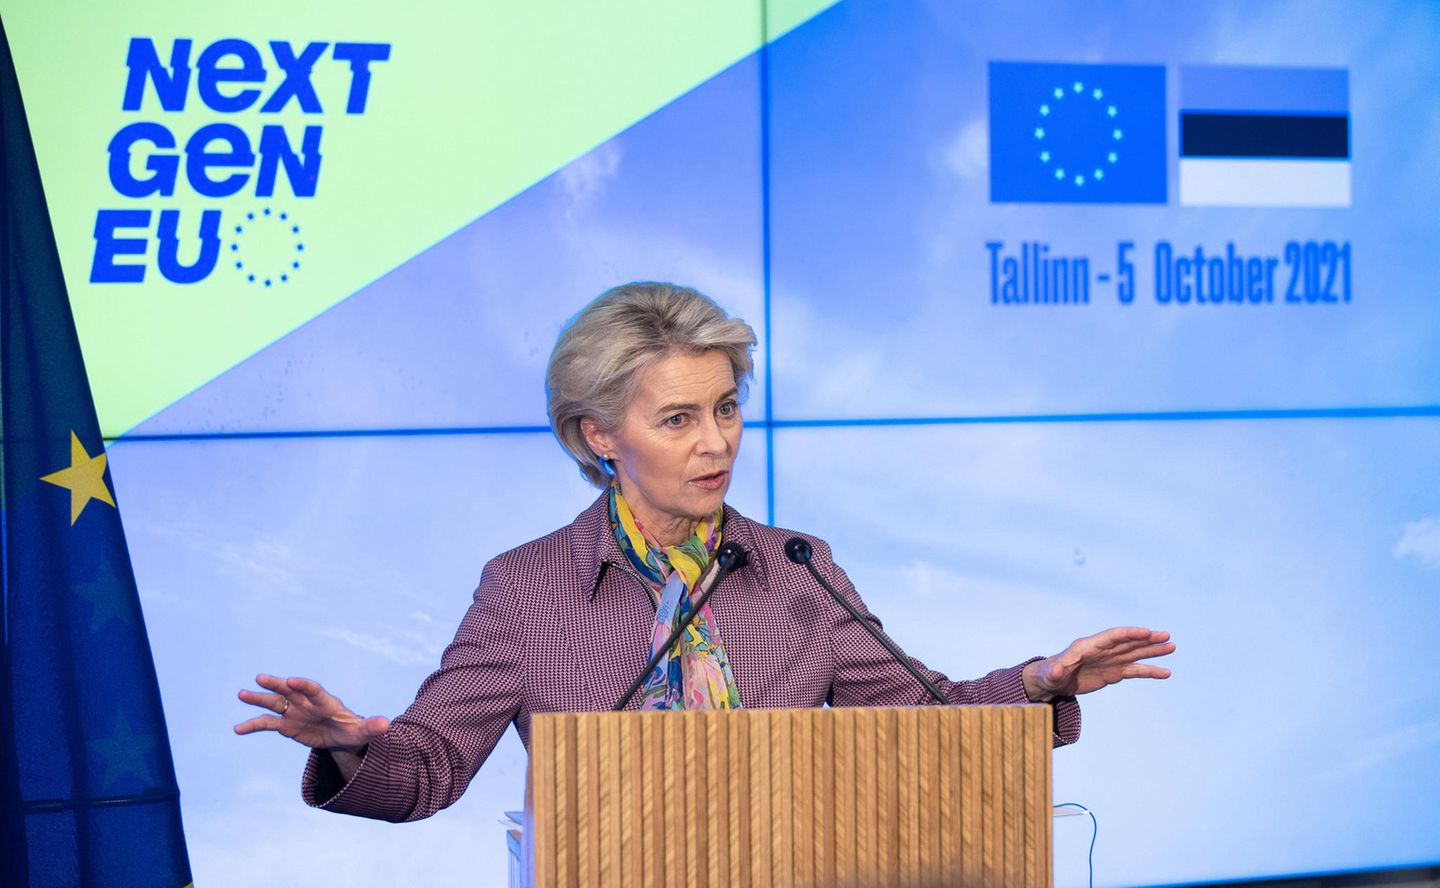 EU-Kommissionspräsidentin Ursula von der Leyen besuchte Tallinn vergangene Woche. Sie traf sich dort mit Premierministerin Kaja Kallas, um über die Pläne Estlands zum wirtschaftlichen Neustart nach der Pandemie zu sprechen. Das Bild zeigt sie bei der Pressekonferenz